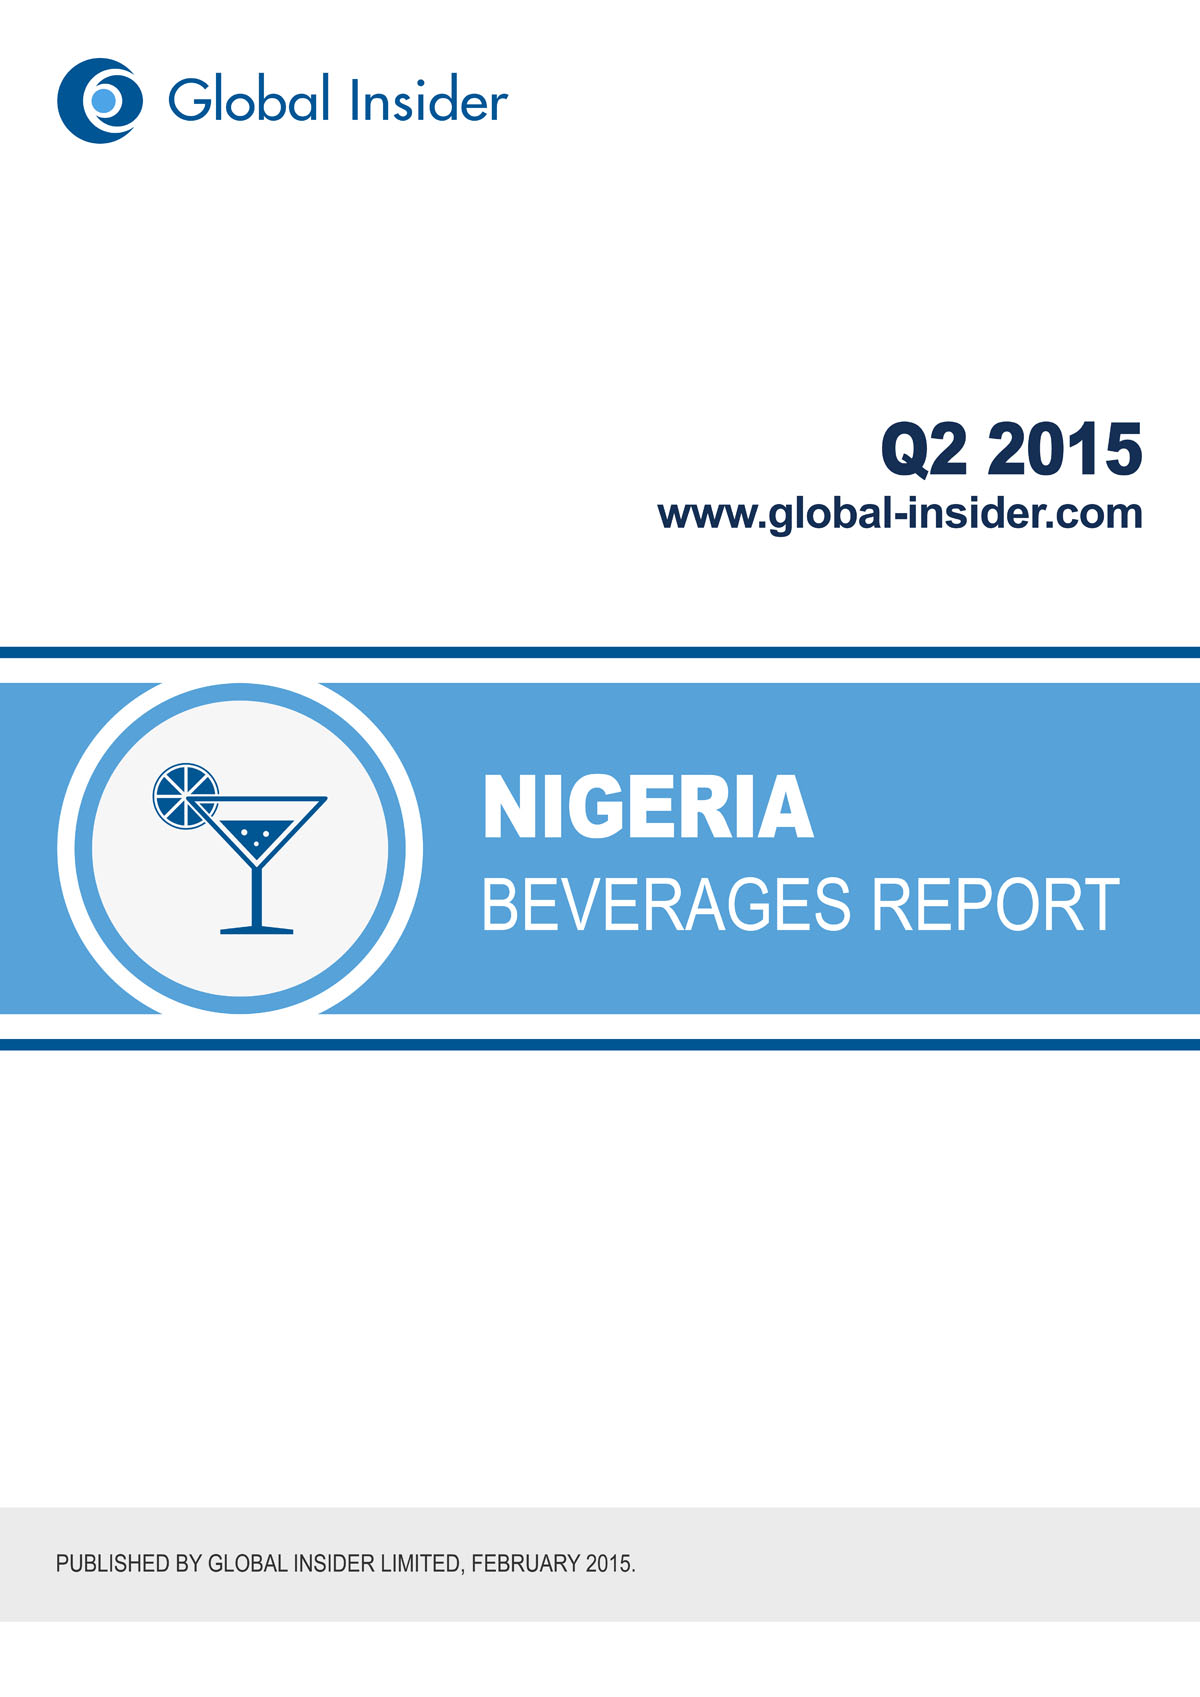 Nigeria Beverages Report